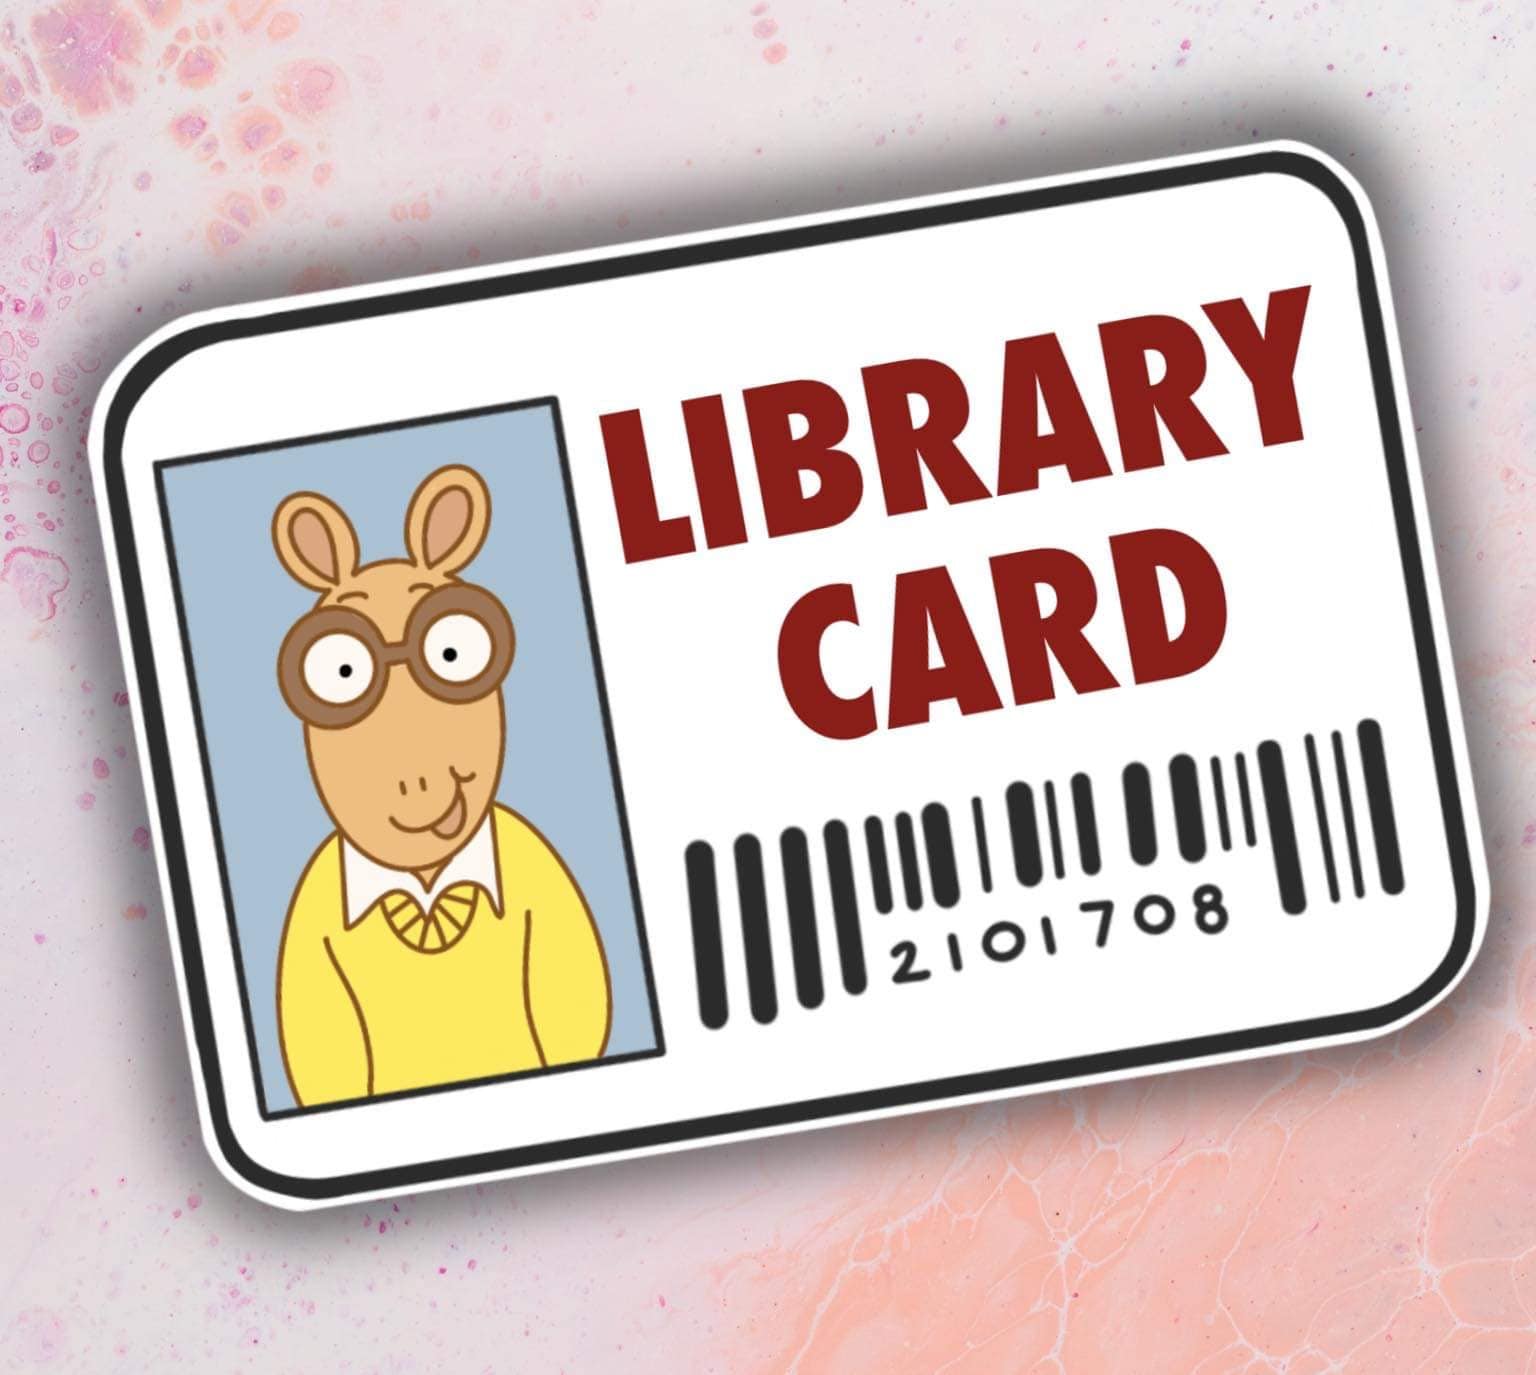 arthur-library-card-printable